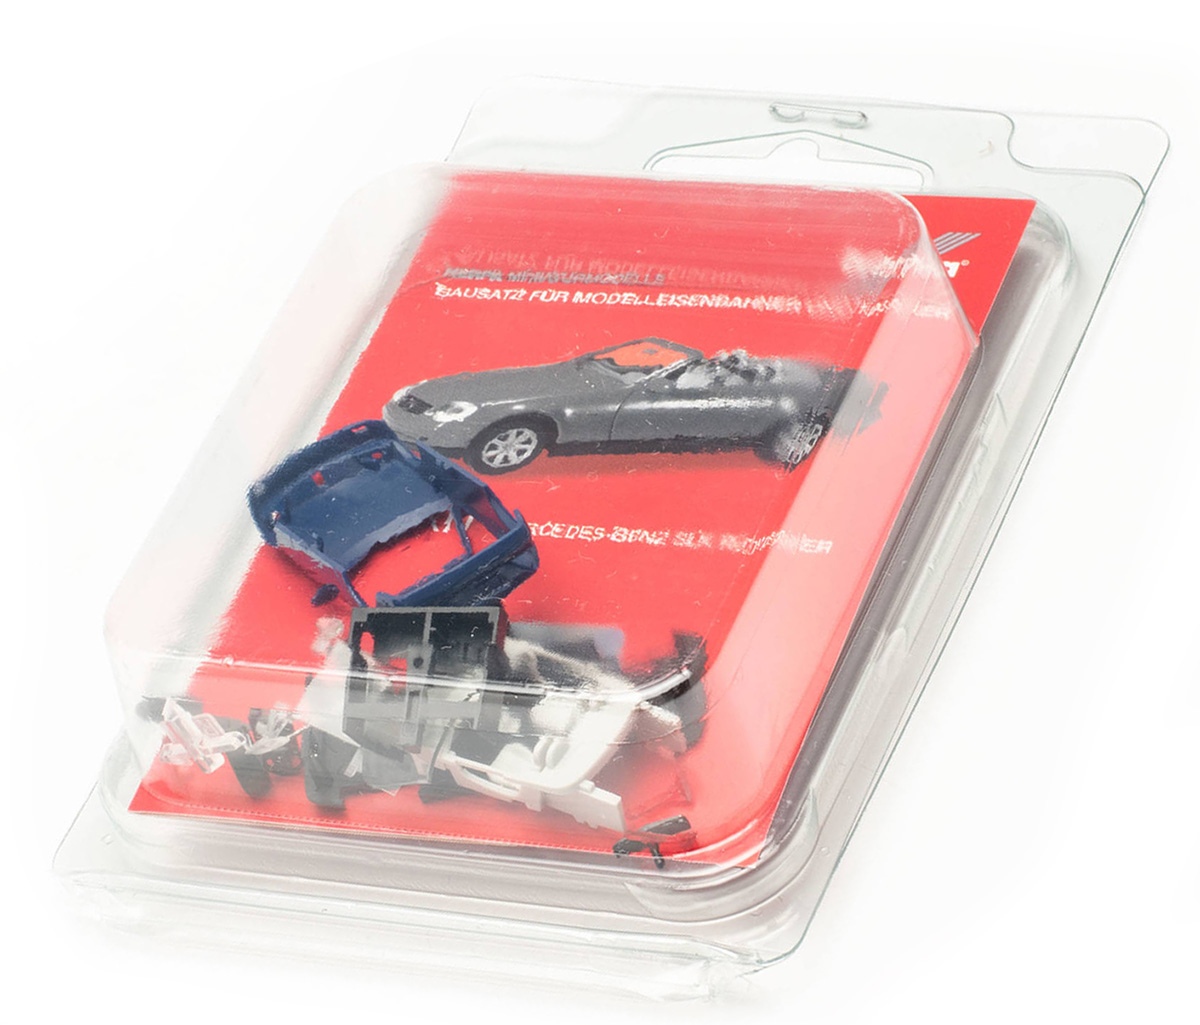 Herpa 012188-007: MB SLK Roadster blue